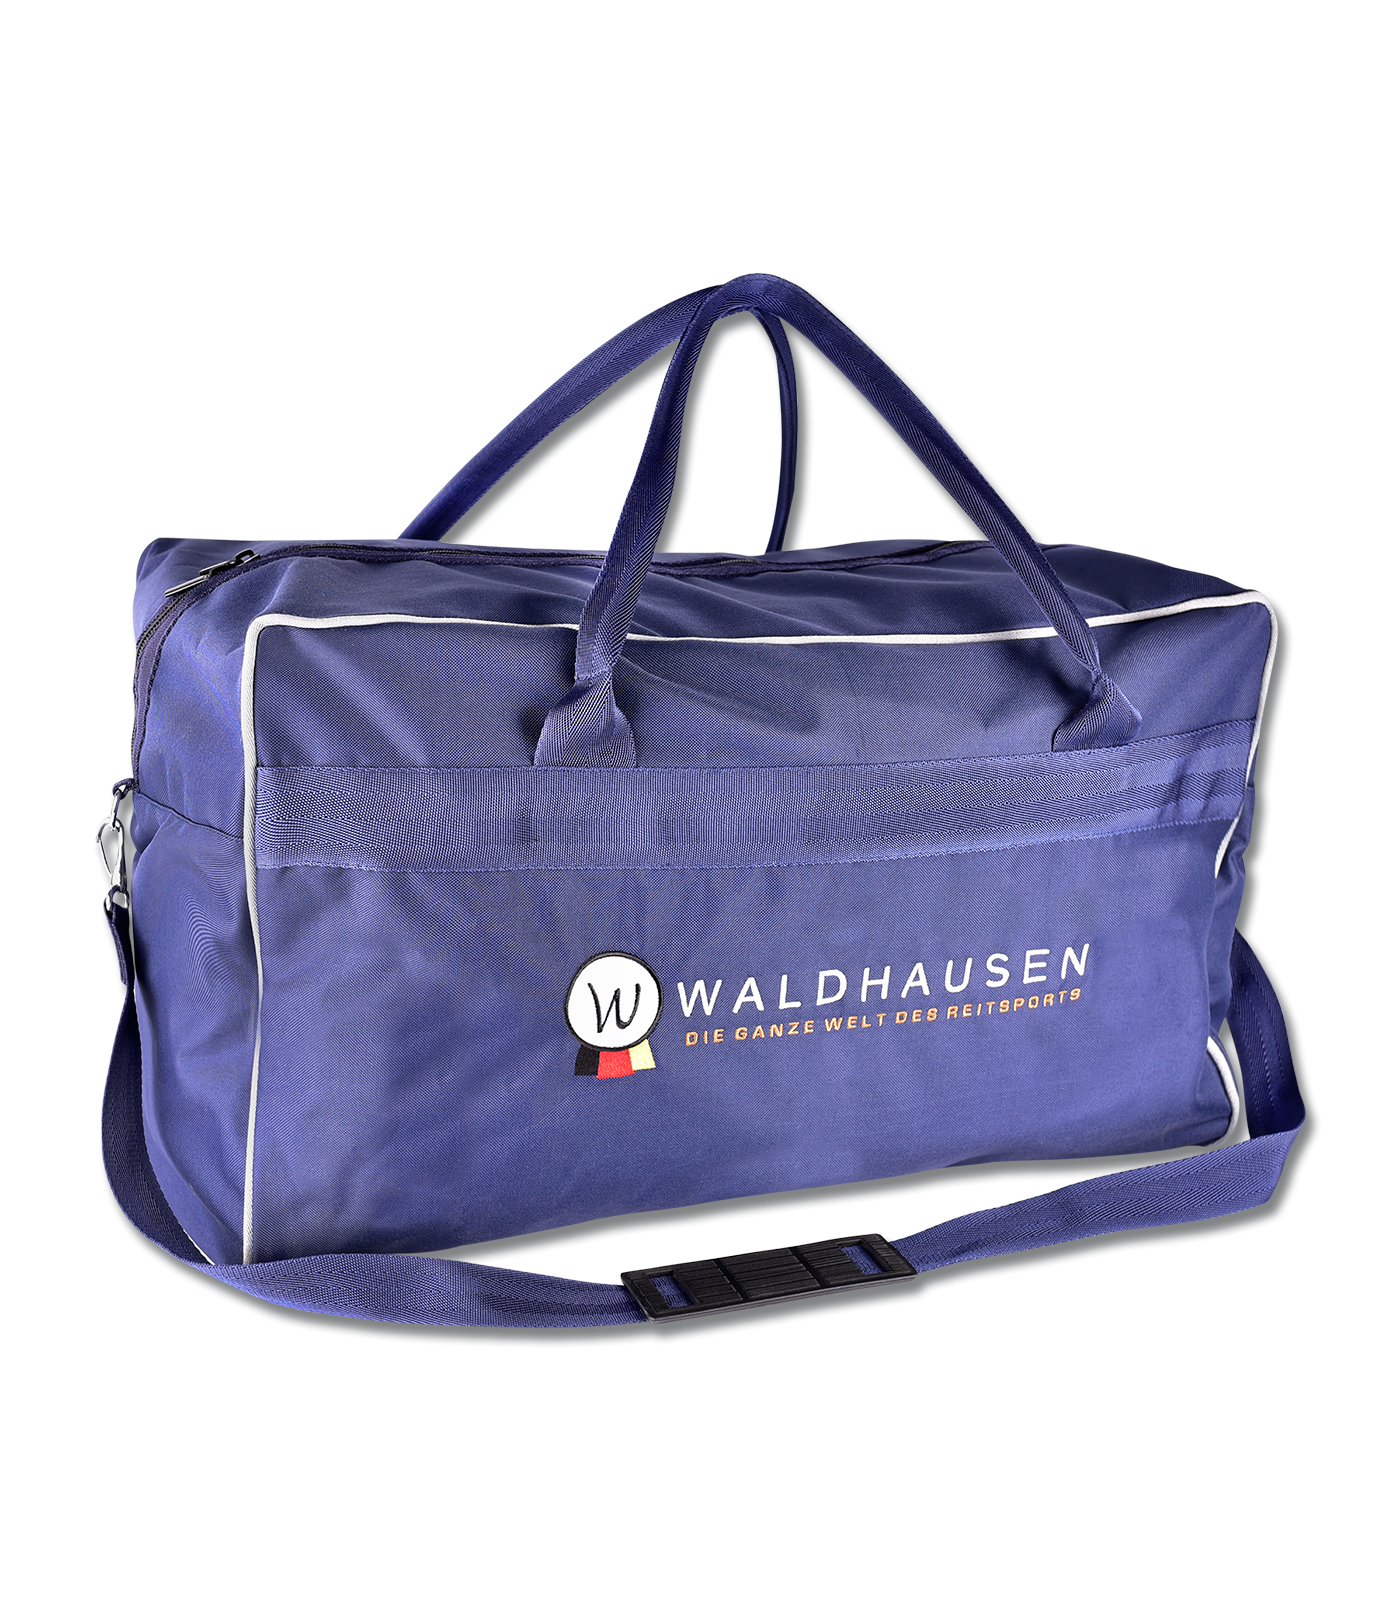 Waldhausen Travelling Bag